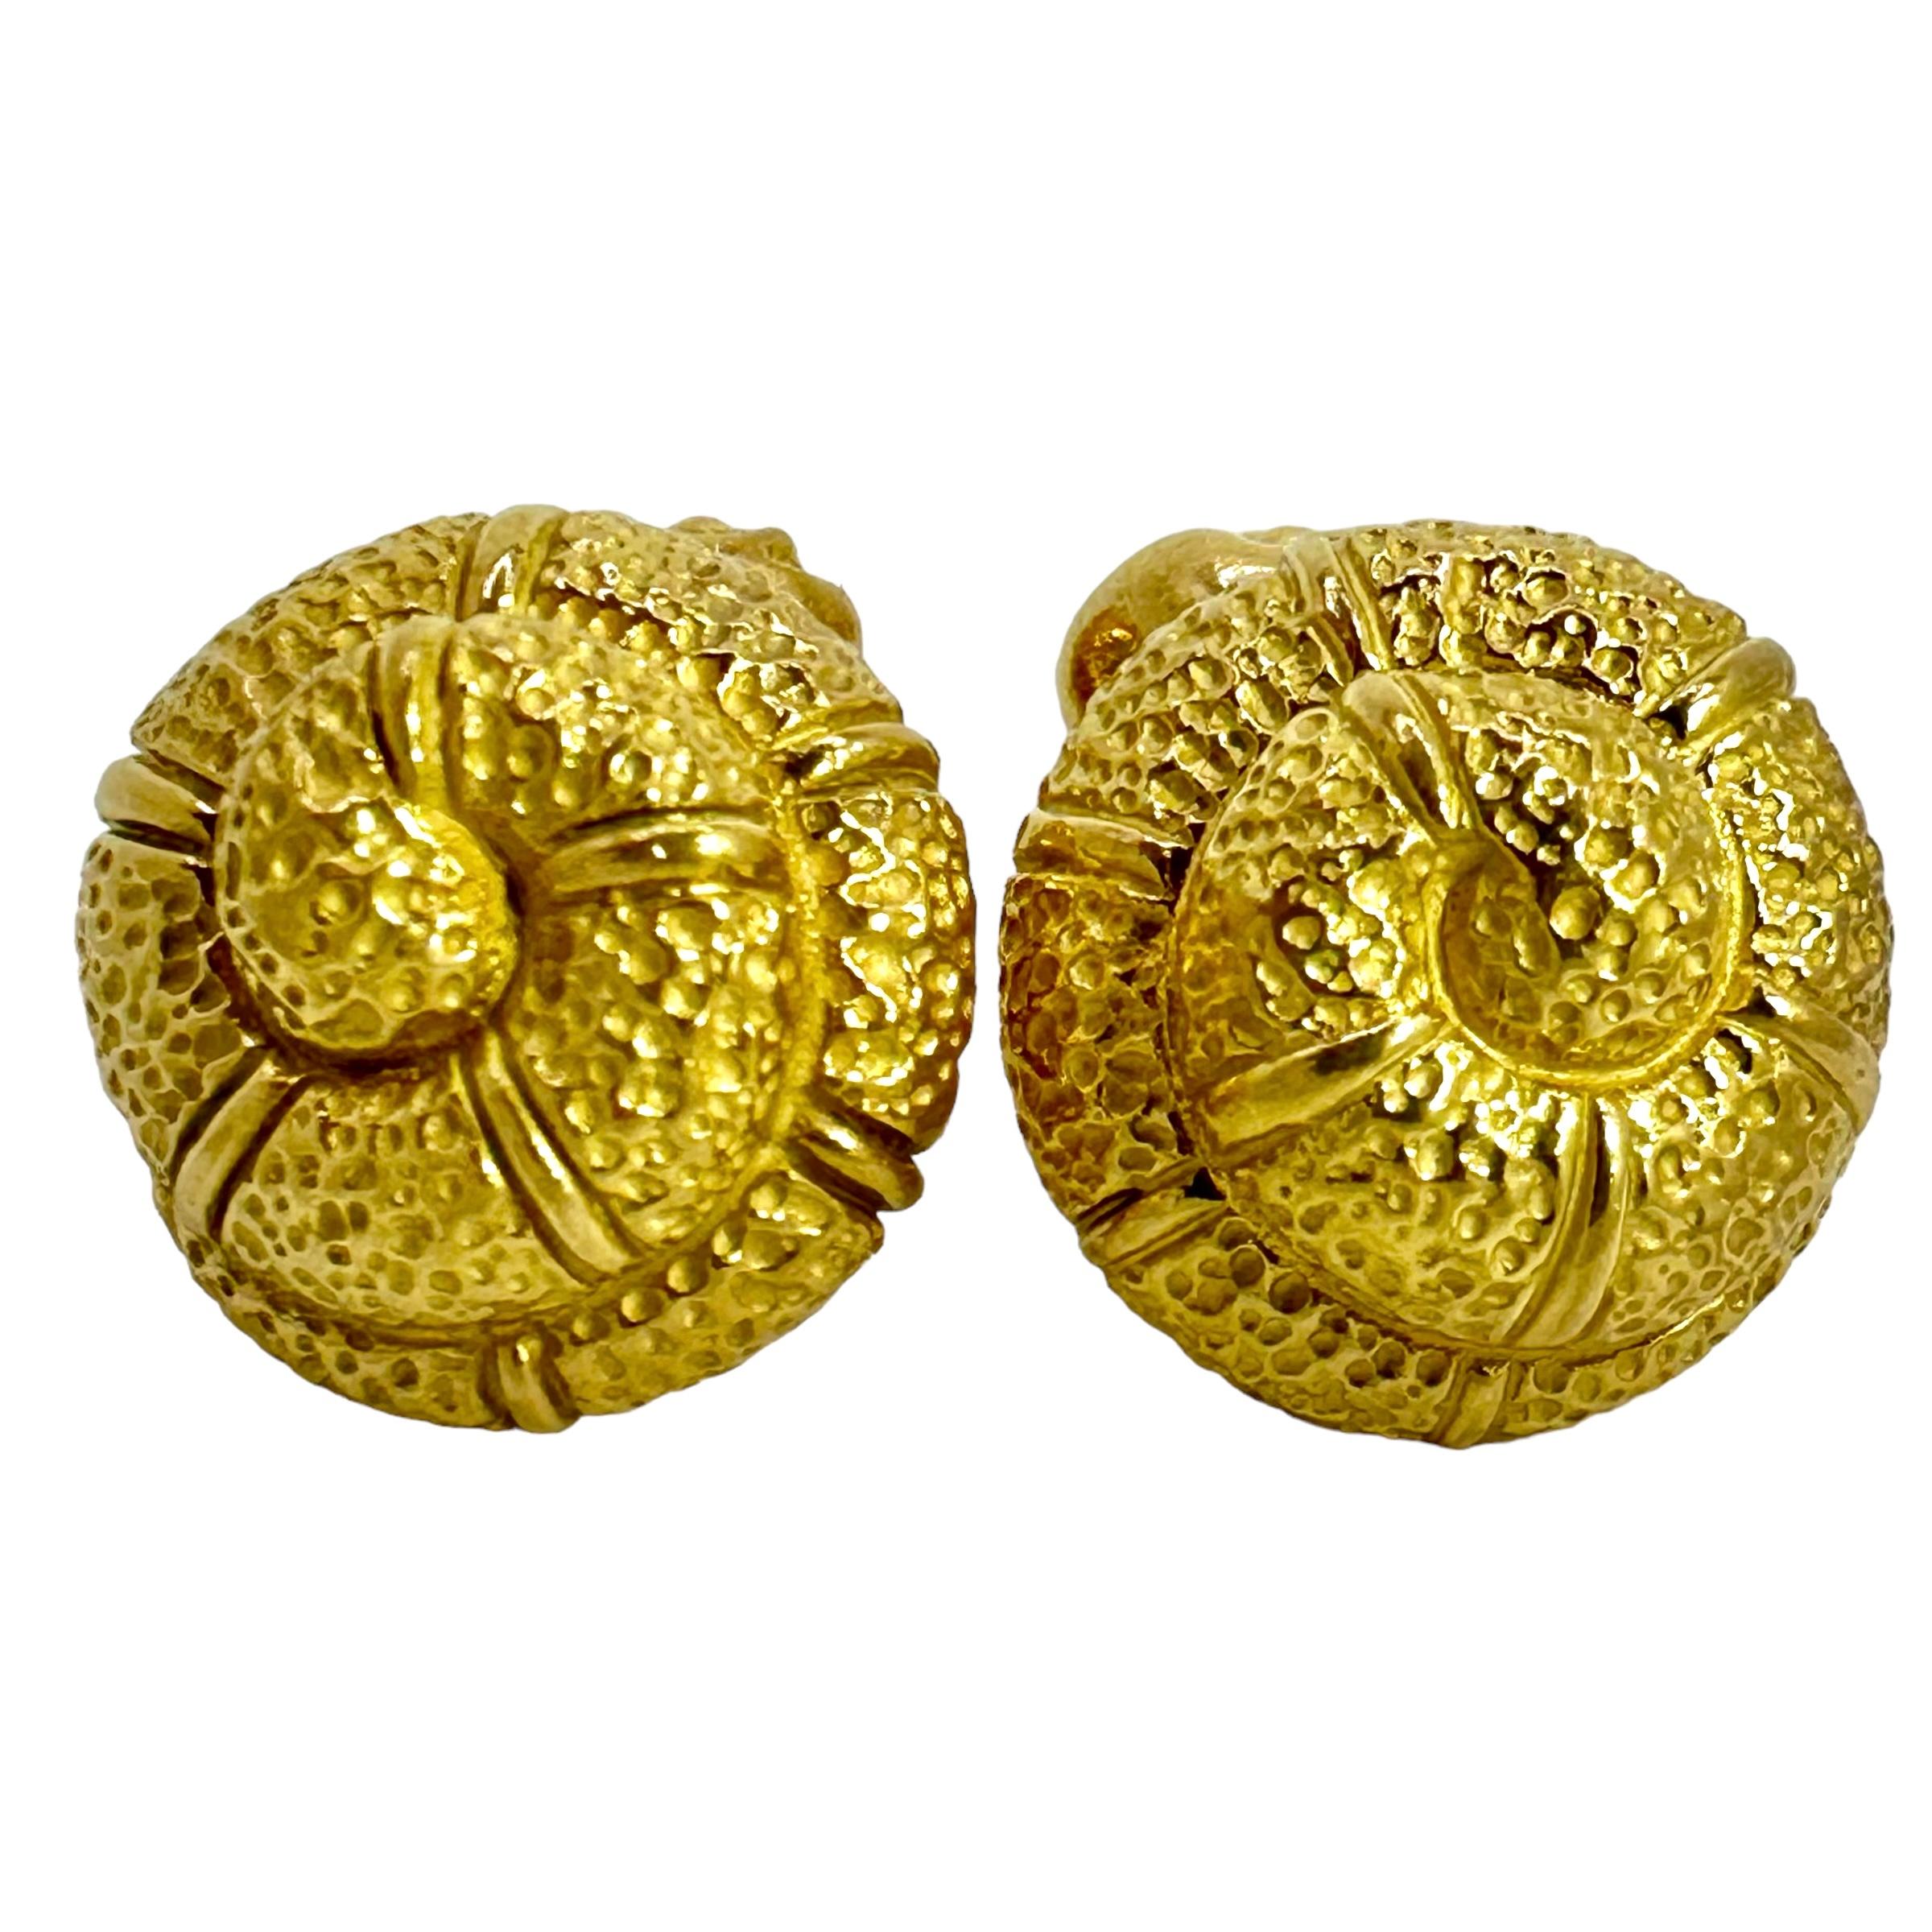 Diese großformatigen Manschettenknöpfe aus 18-karätigem Gold mit maritimen Motiven der Designerin Elizabeth Gage sind eine hübsche Ergänzung für jede Herrengarderobe.  Die Manschettenknöpfe sind mit viel Liebe zum Detail gestaltet, sogar auf der